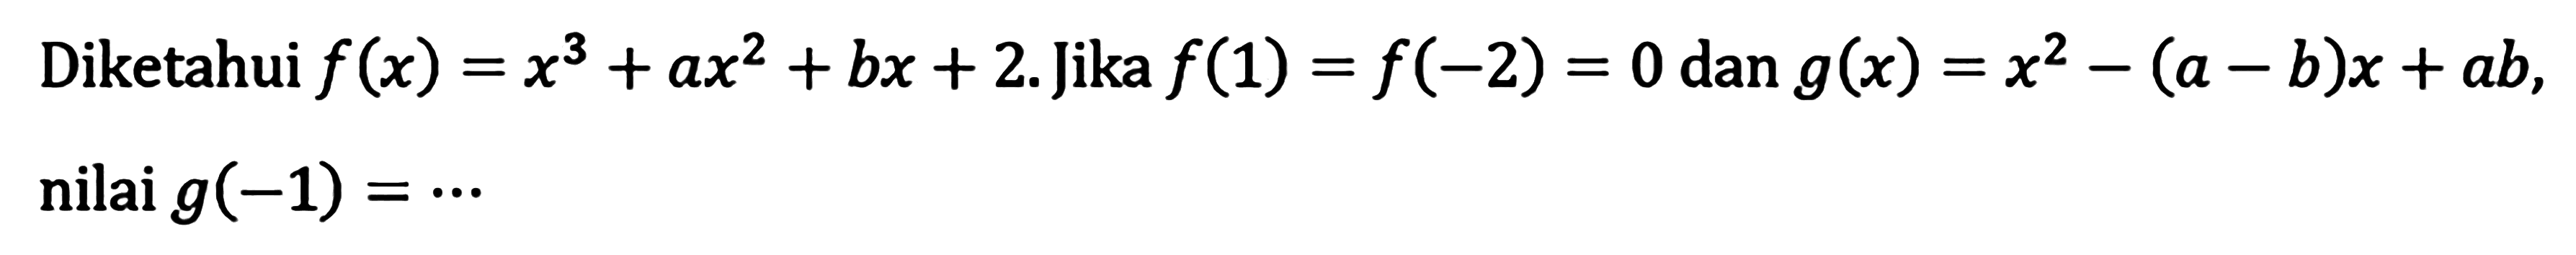 Diketahui f(x)=x^3+ax^2+bx+2. Jika f(1)=f(2)=0 dan g(x)=x^2-(a-b)x+ab, nilai g(-1)= ...